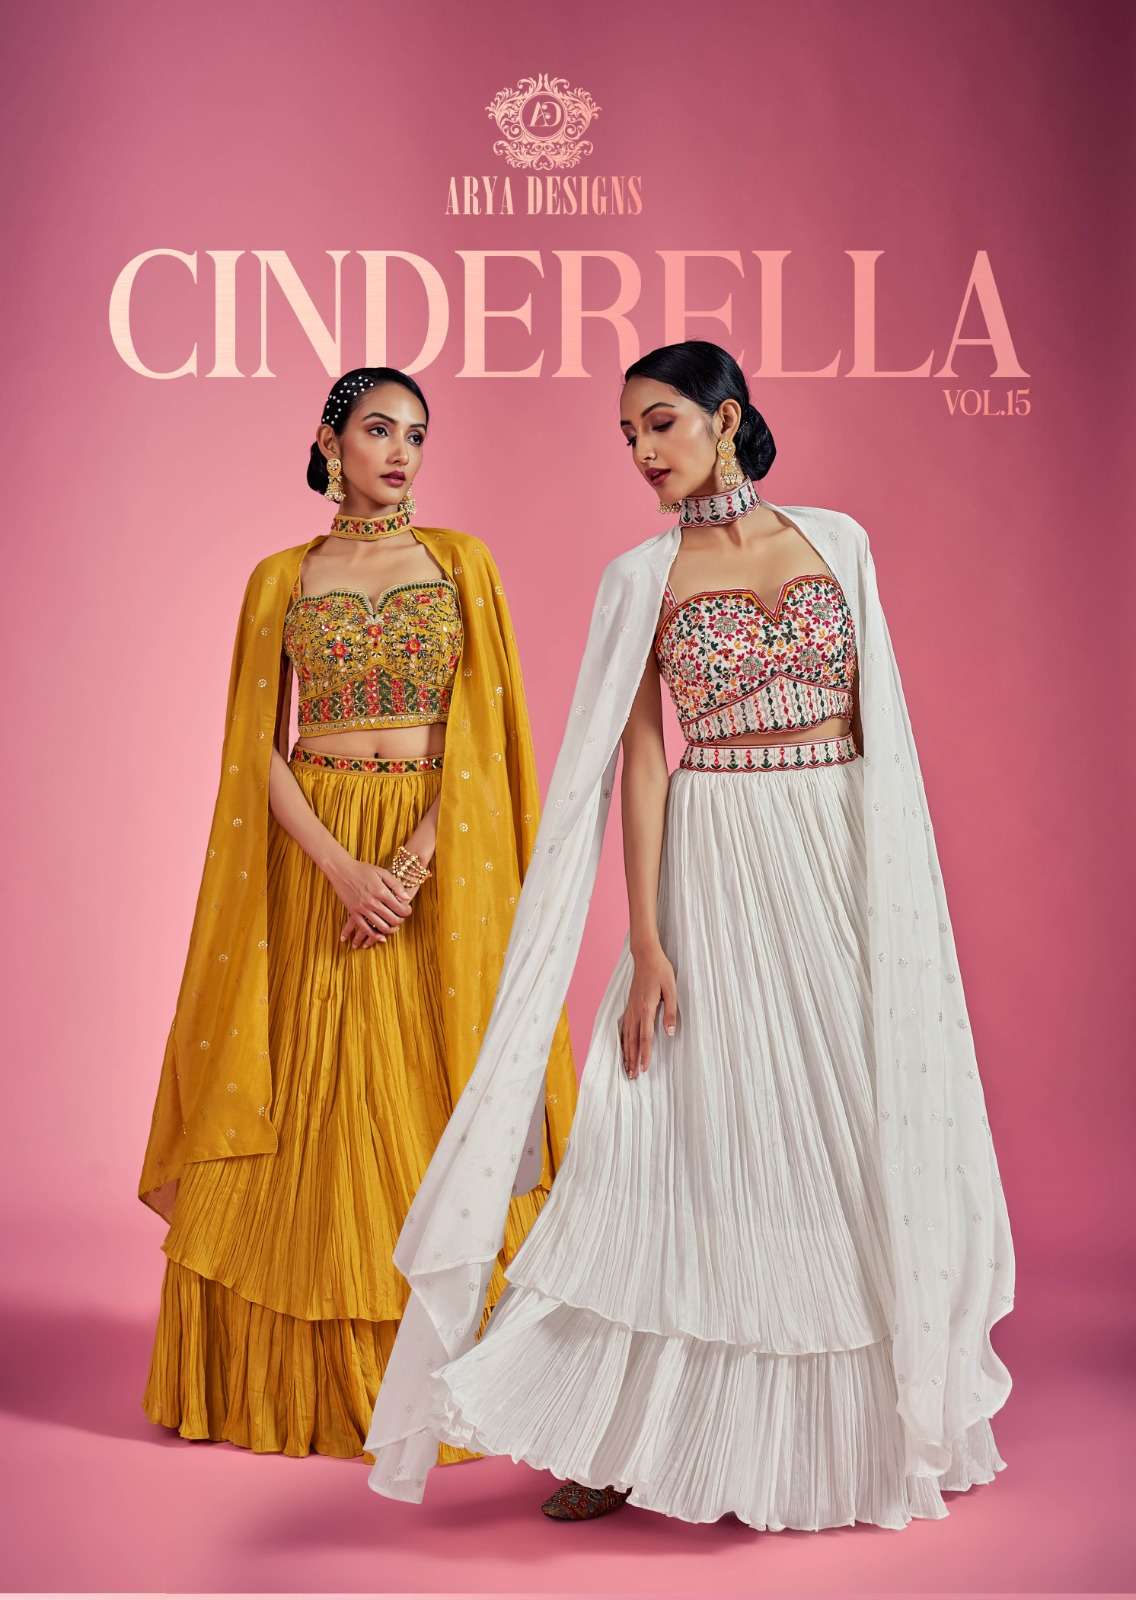 arya designs cinderella vol 15 full stitch fancy lehenga choli with dupatta